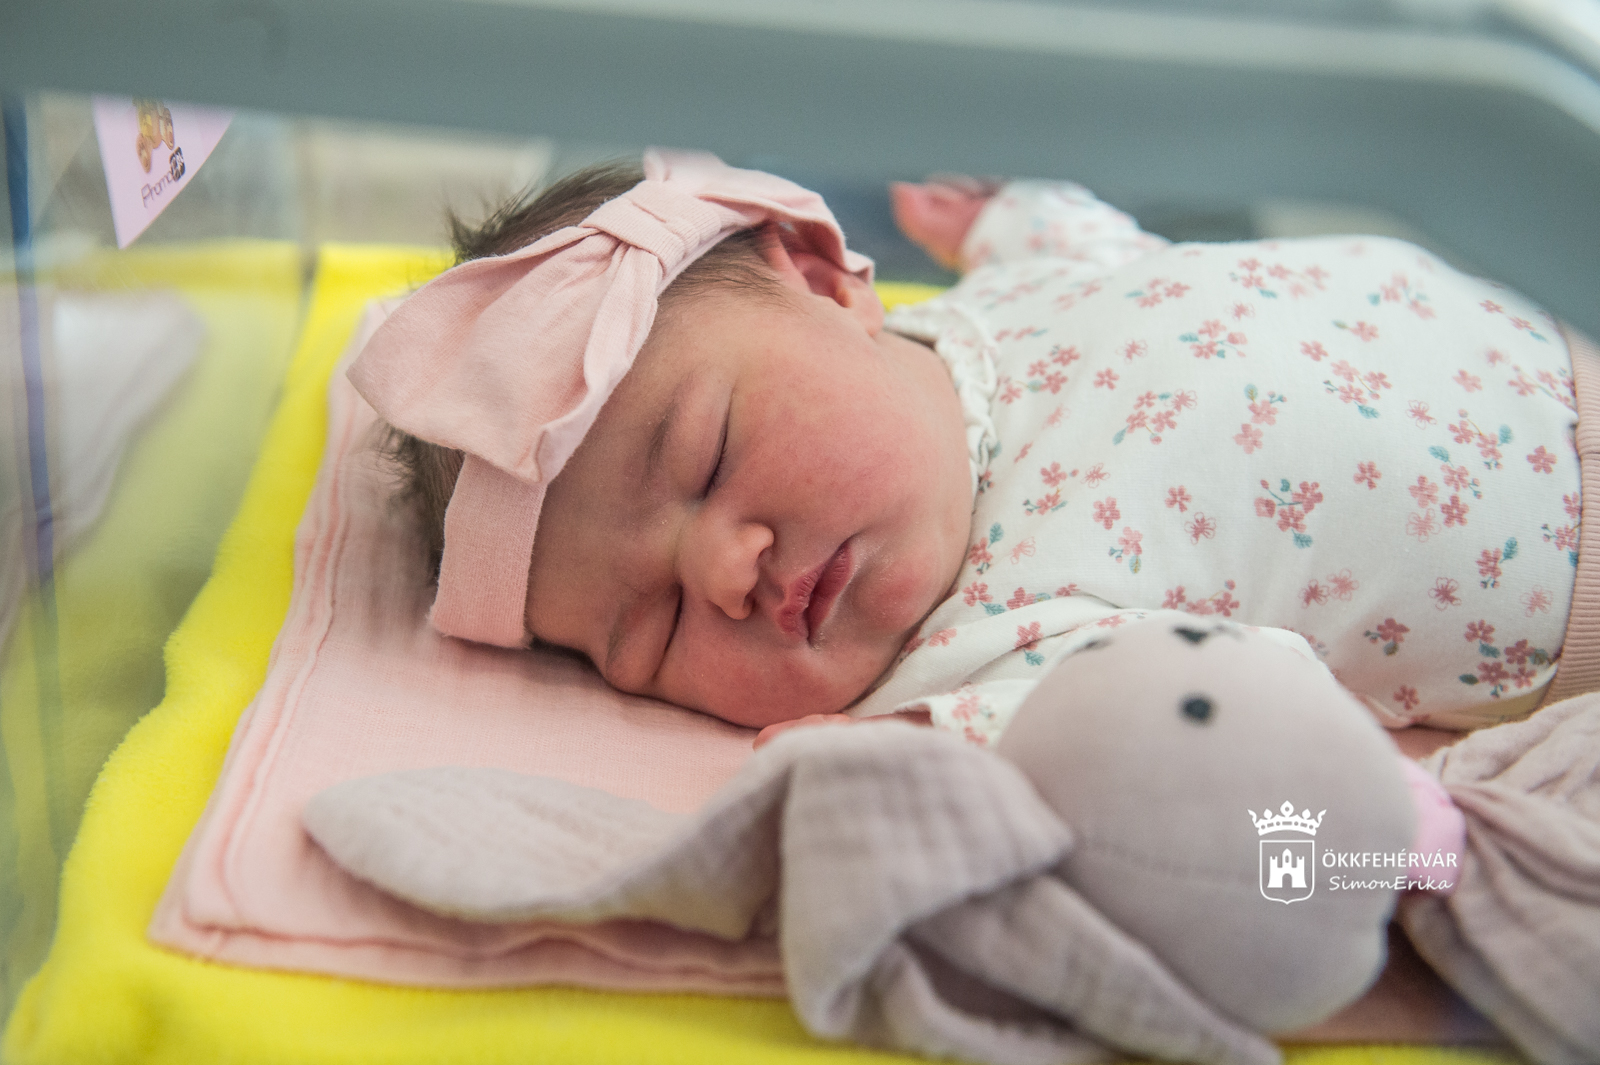 Szepesi Lana az idei első székesfehérvári kisbaba